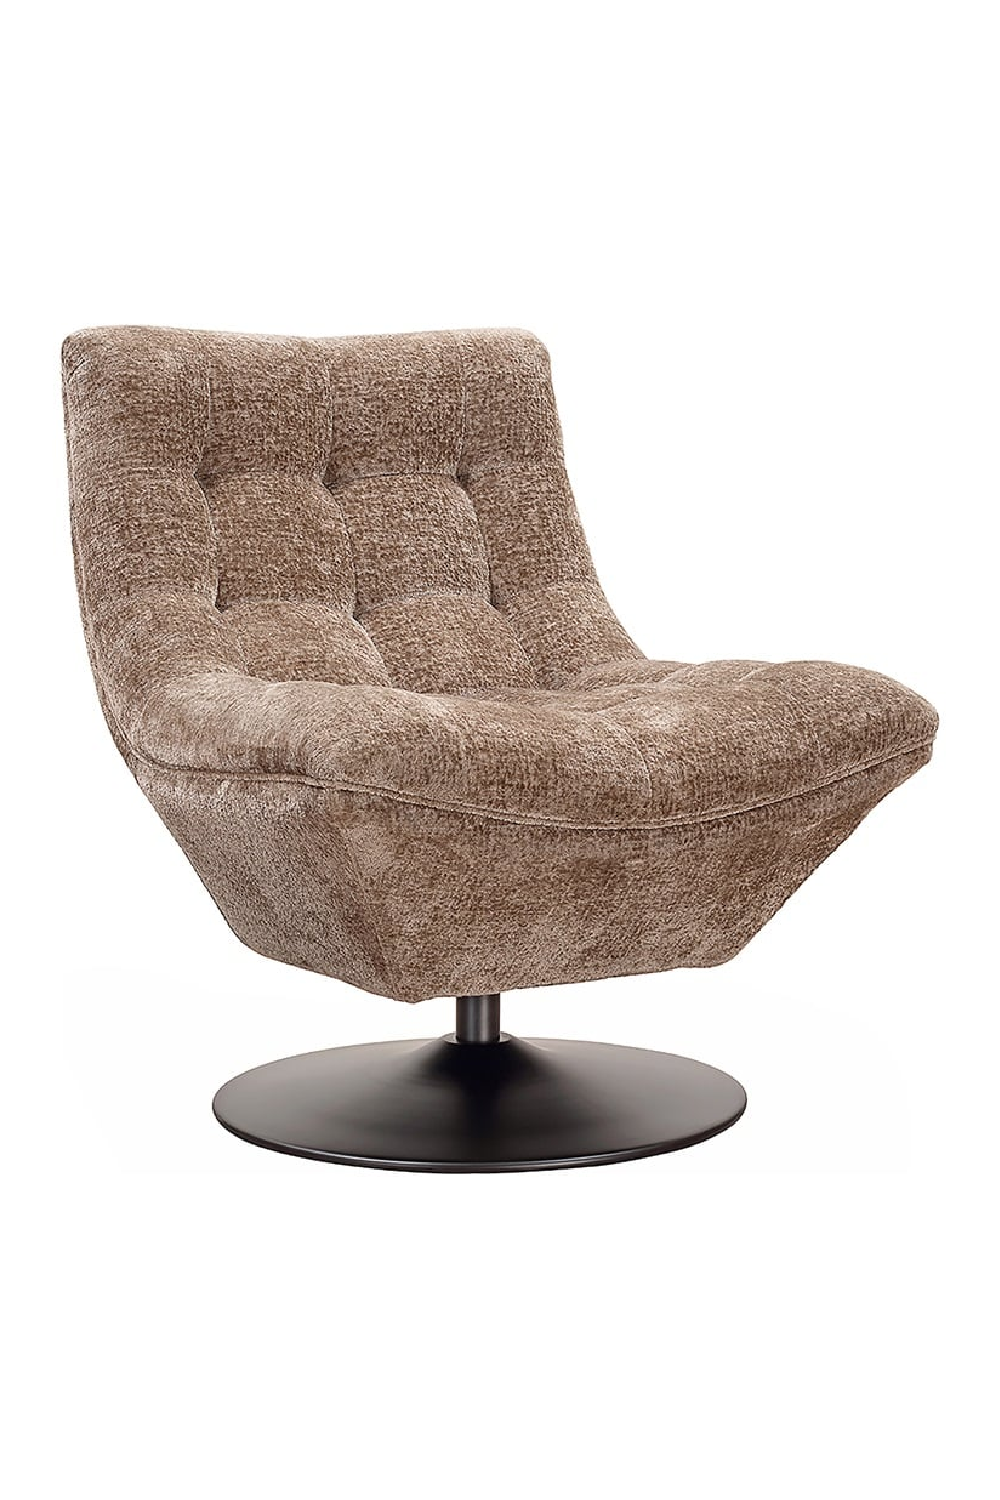 Tufted Swivel Lounge Chair | OROA Sydney | Oroa.com